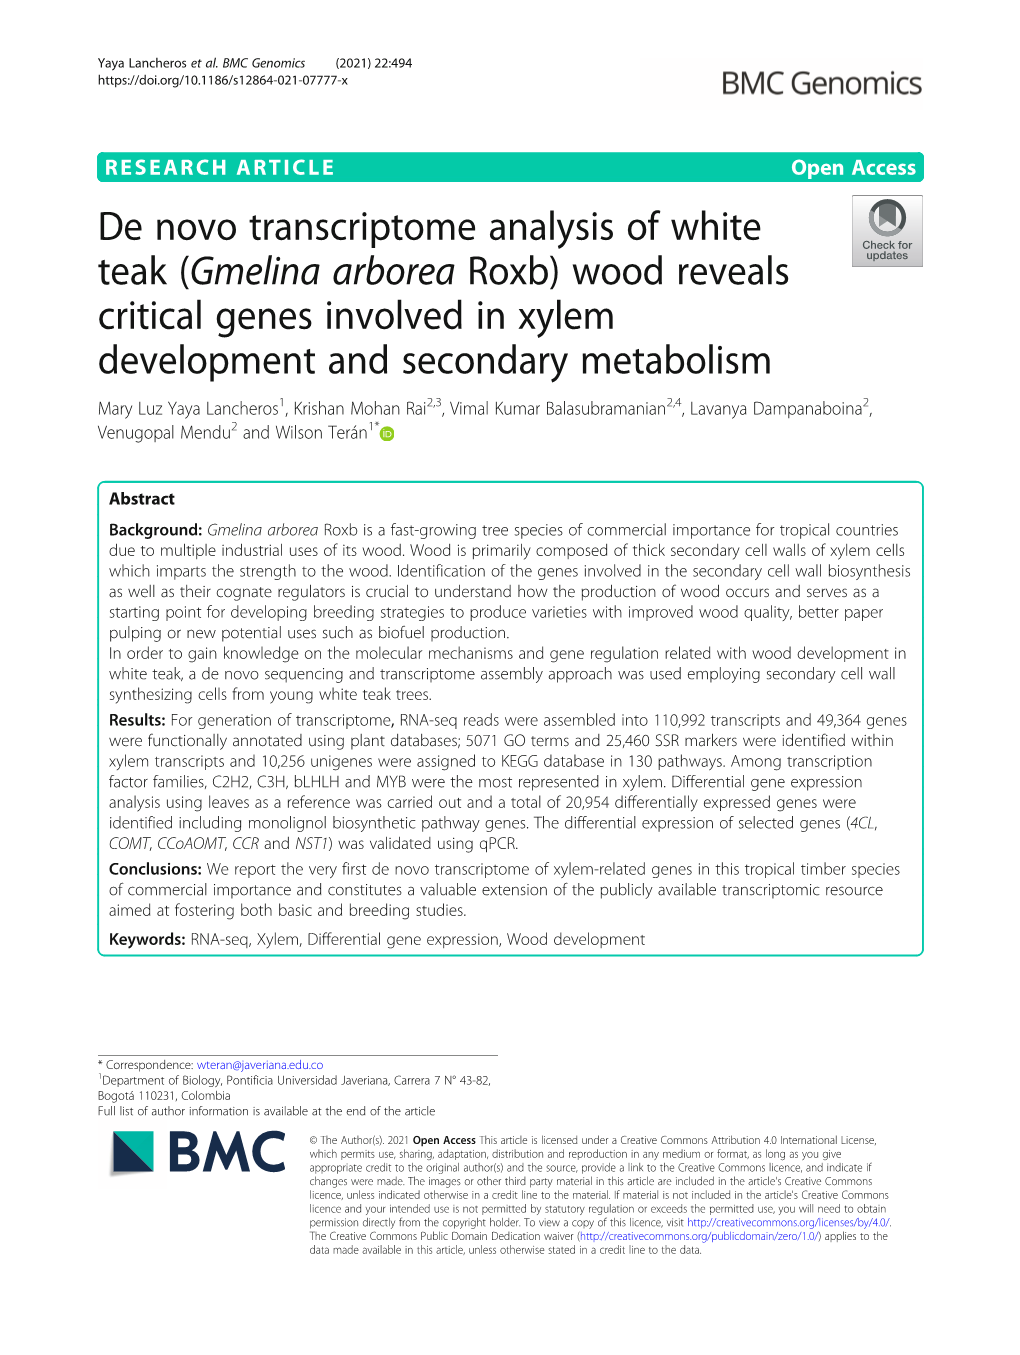 De Novo Transcriptome Analysis of White Teak (Gmelina Arborea Roxb